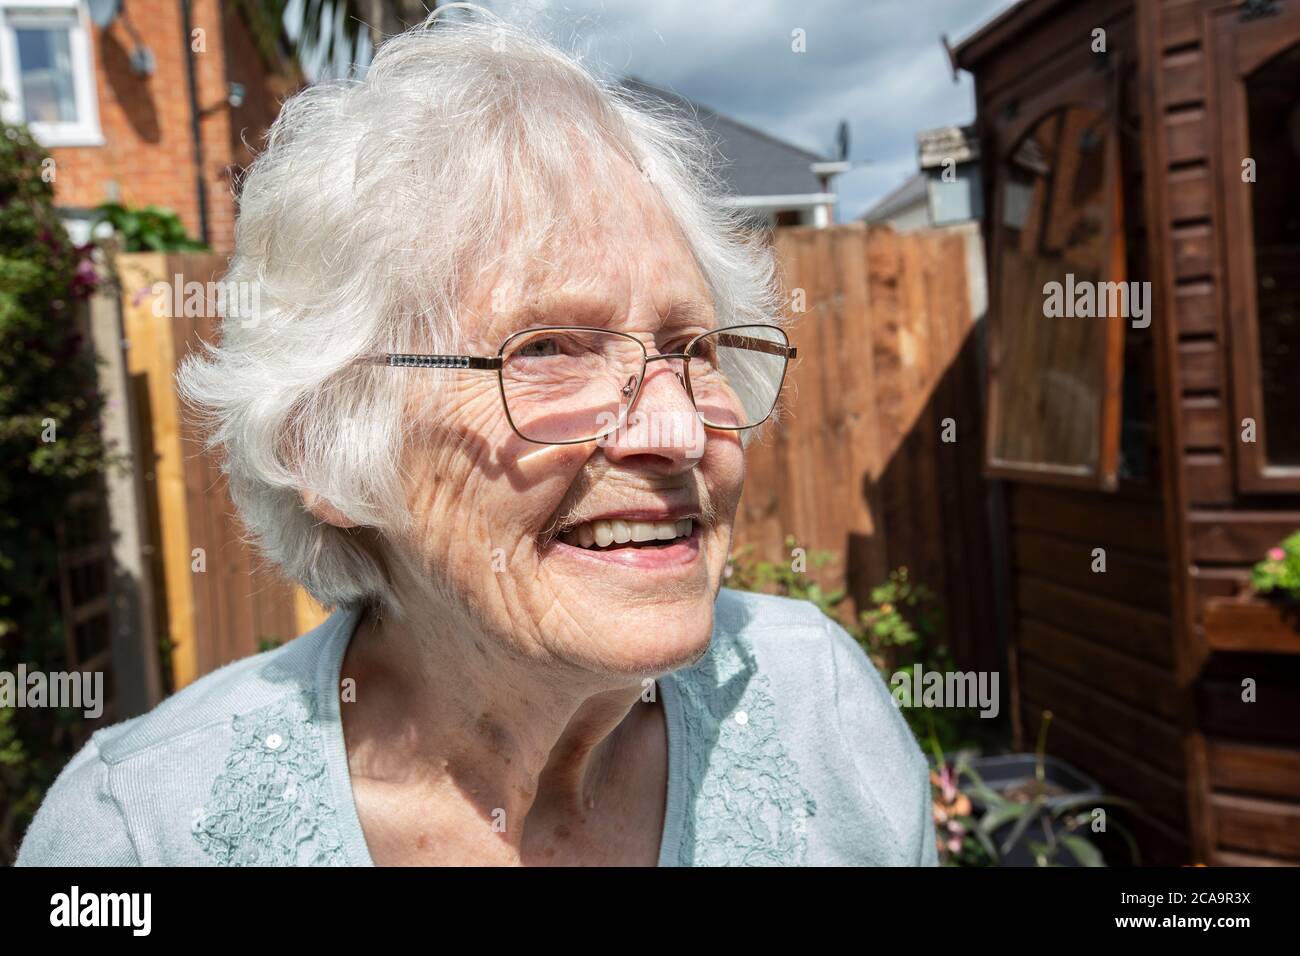 Donna anziana nei suoi anni '80 che svolge attività di giardinaggio nel suo giardino residenziale posteriore, Inghilterra, Regno Unito Foto Stock